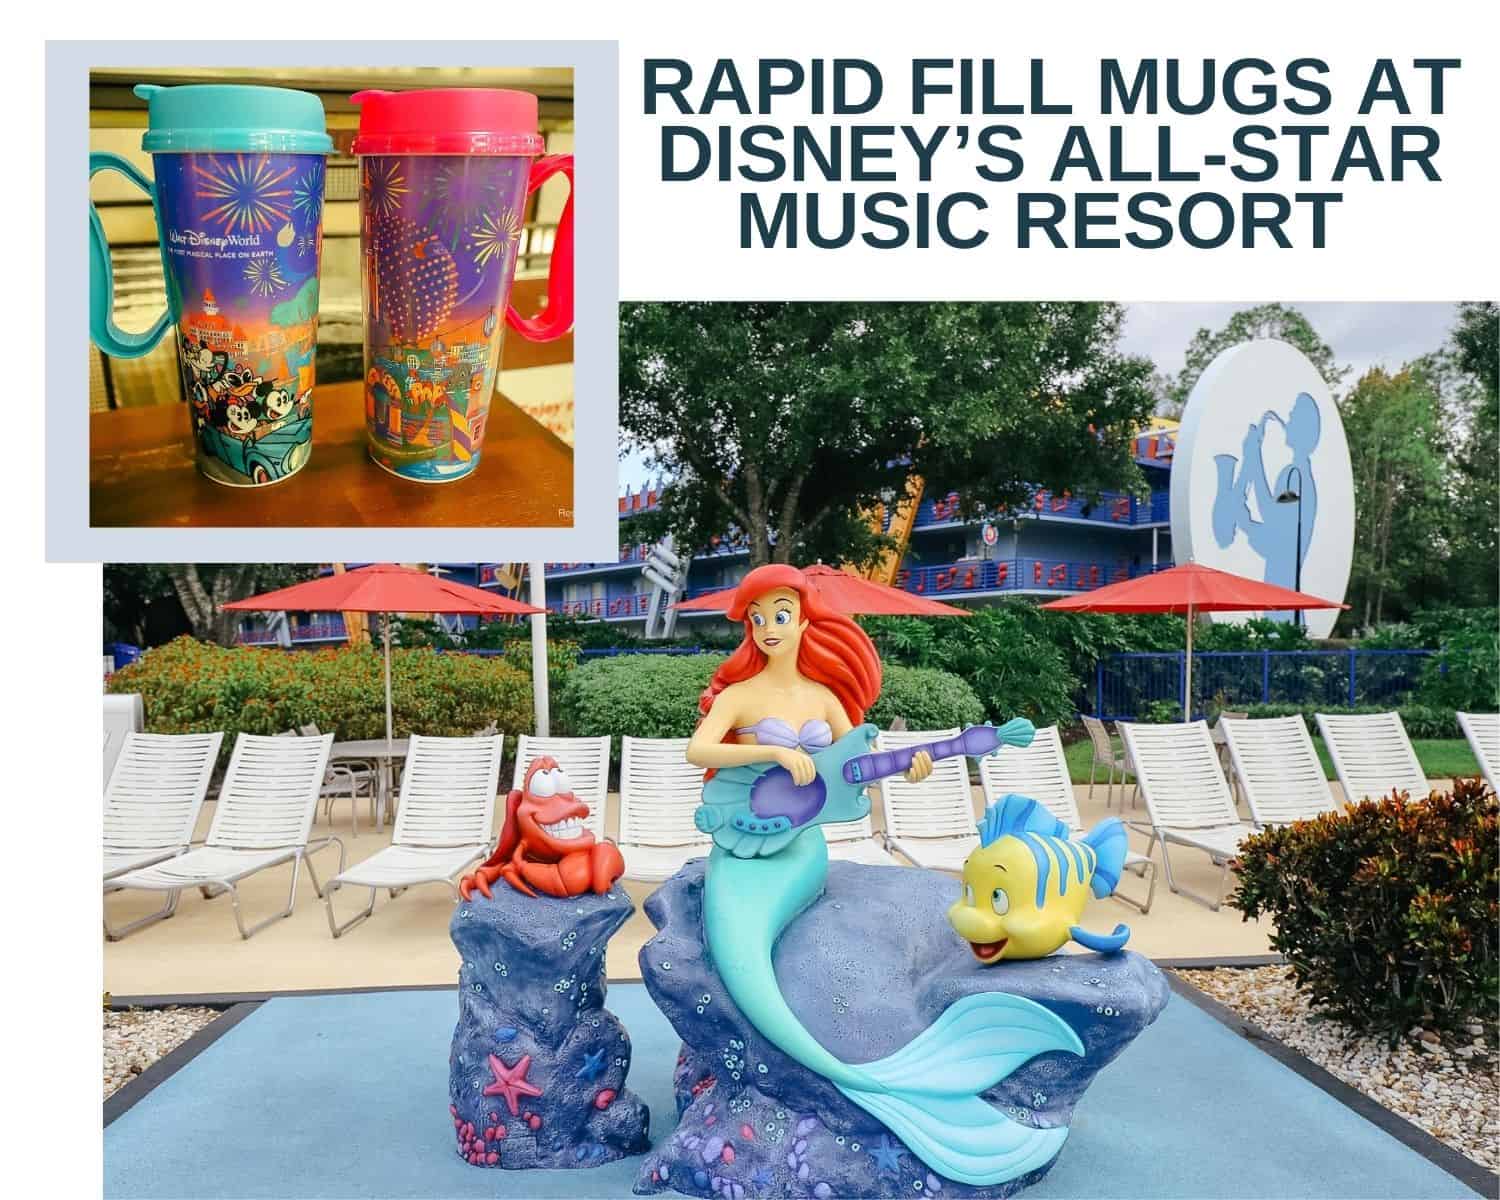 Rapid Fill Mugs at Disney's All-Star Music Resort